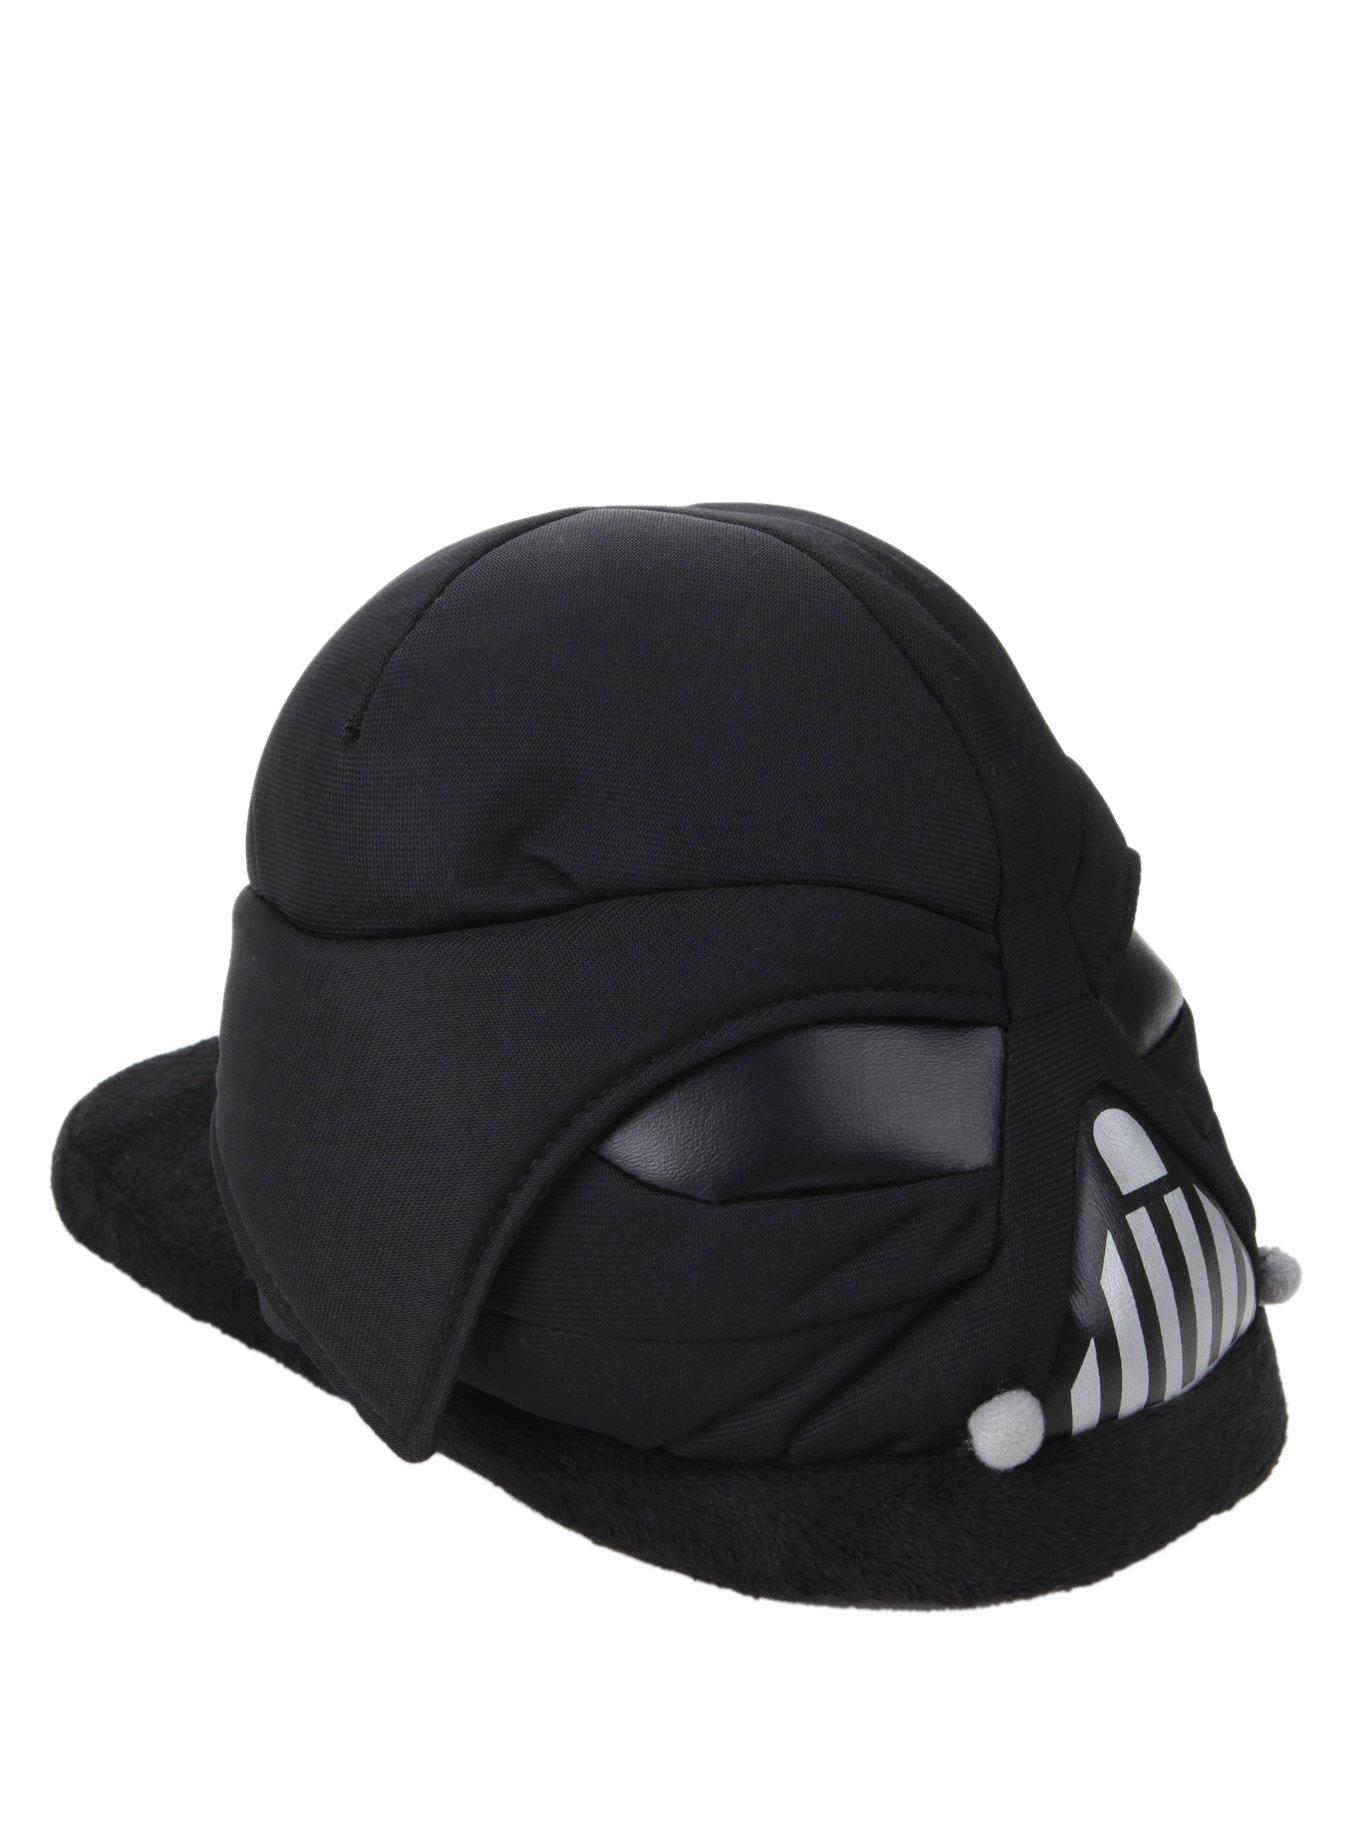 Star Wars Darth Vader Head Slippers, BLACK, hi-res